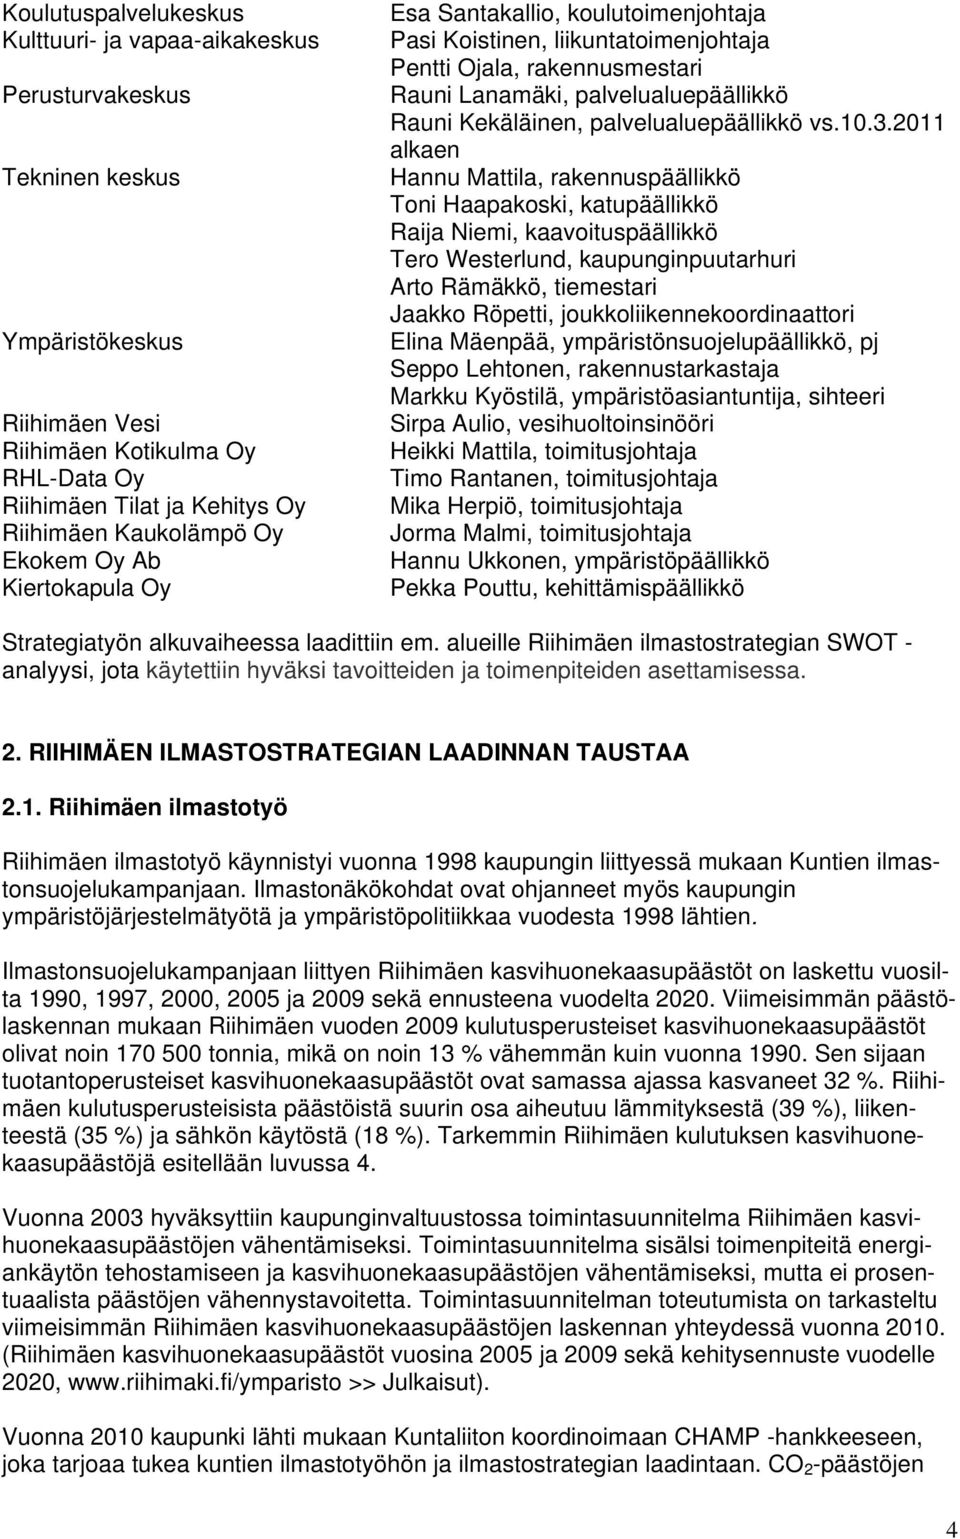 Kekäläinen, palvelualuepäällikkö vs.10.3.